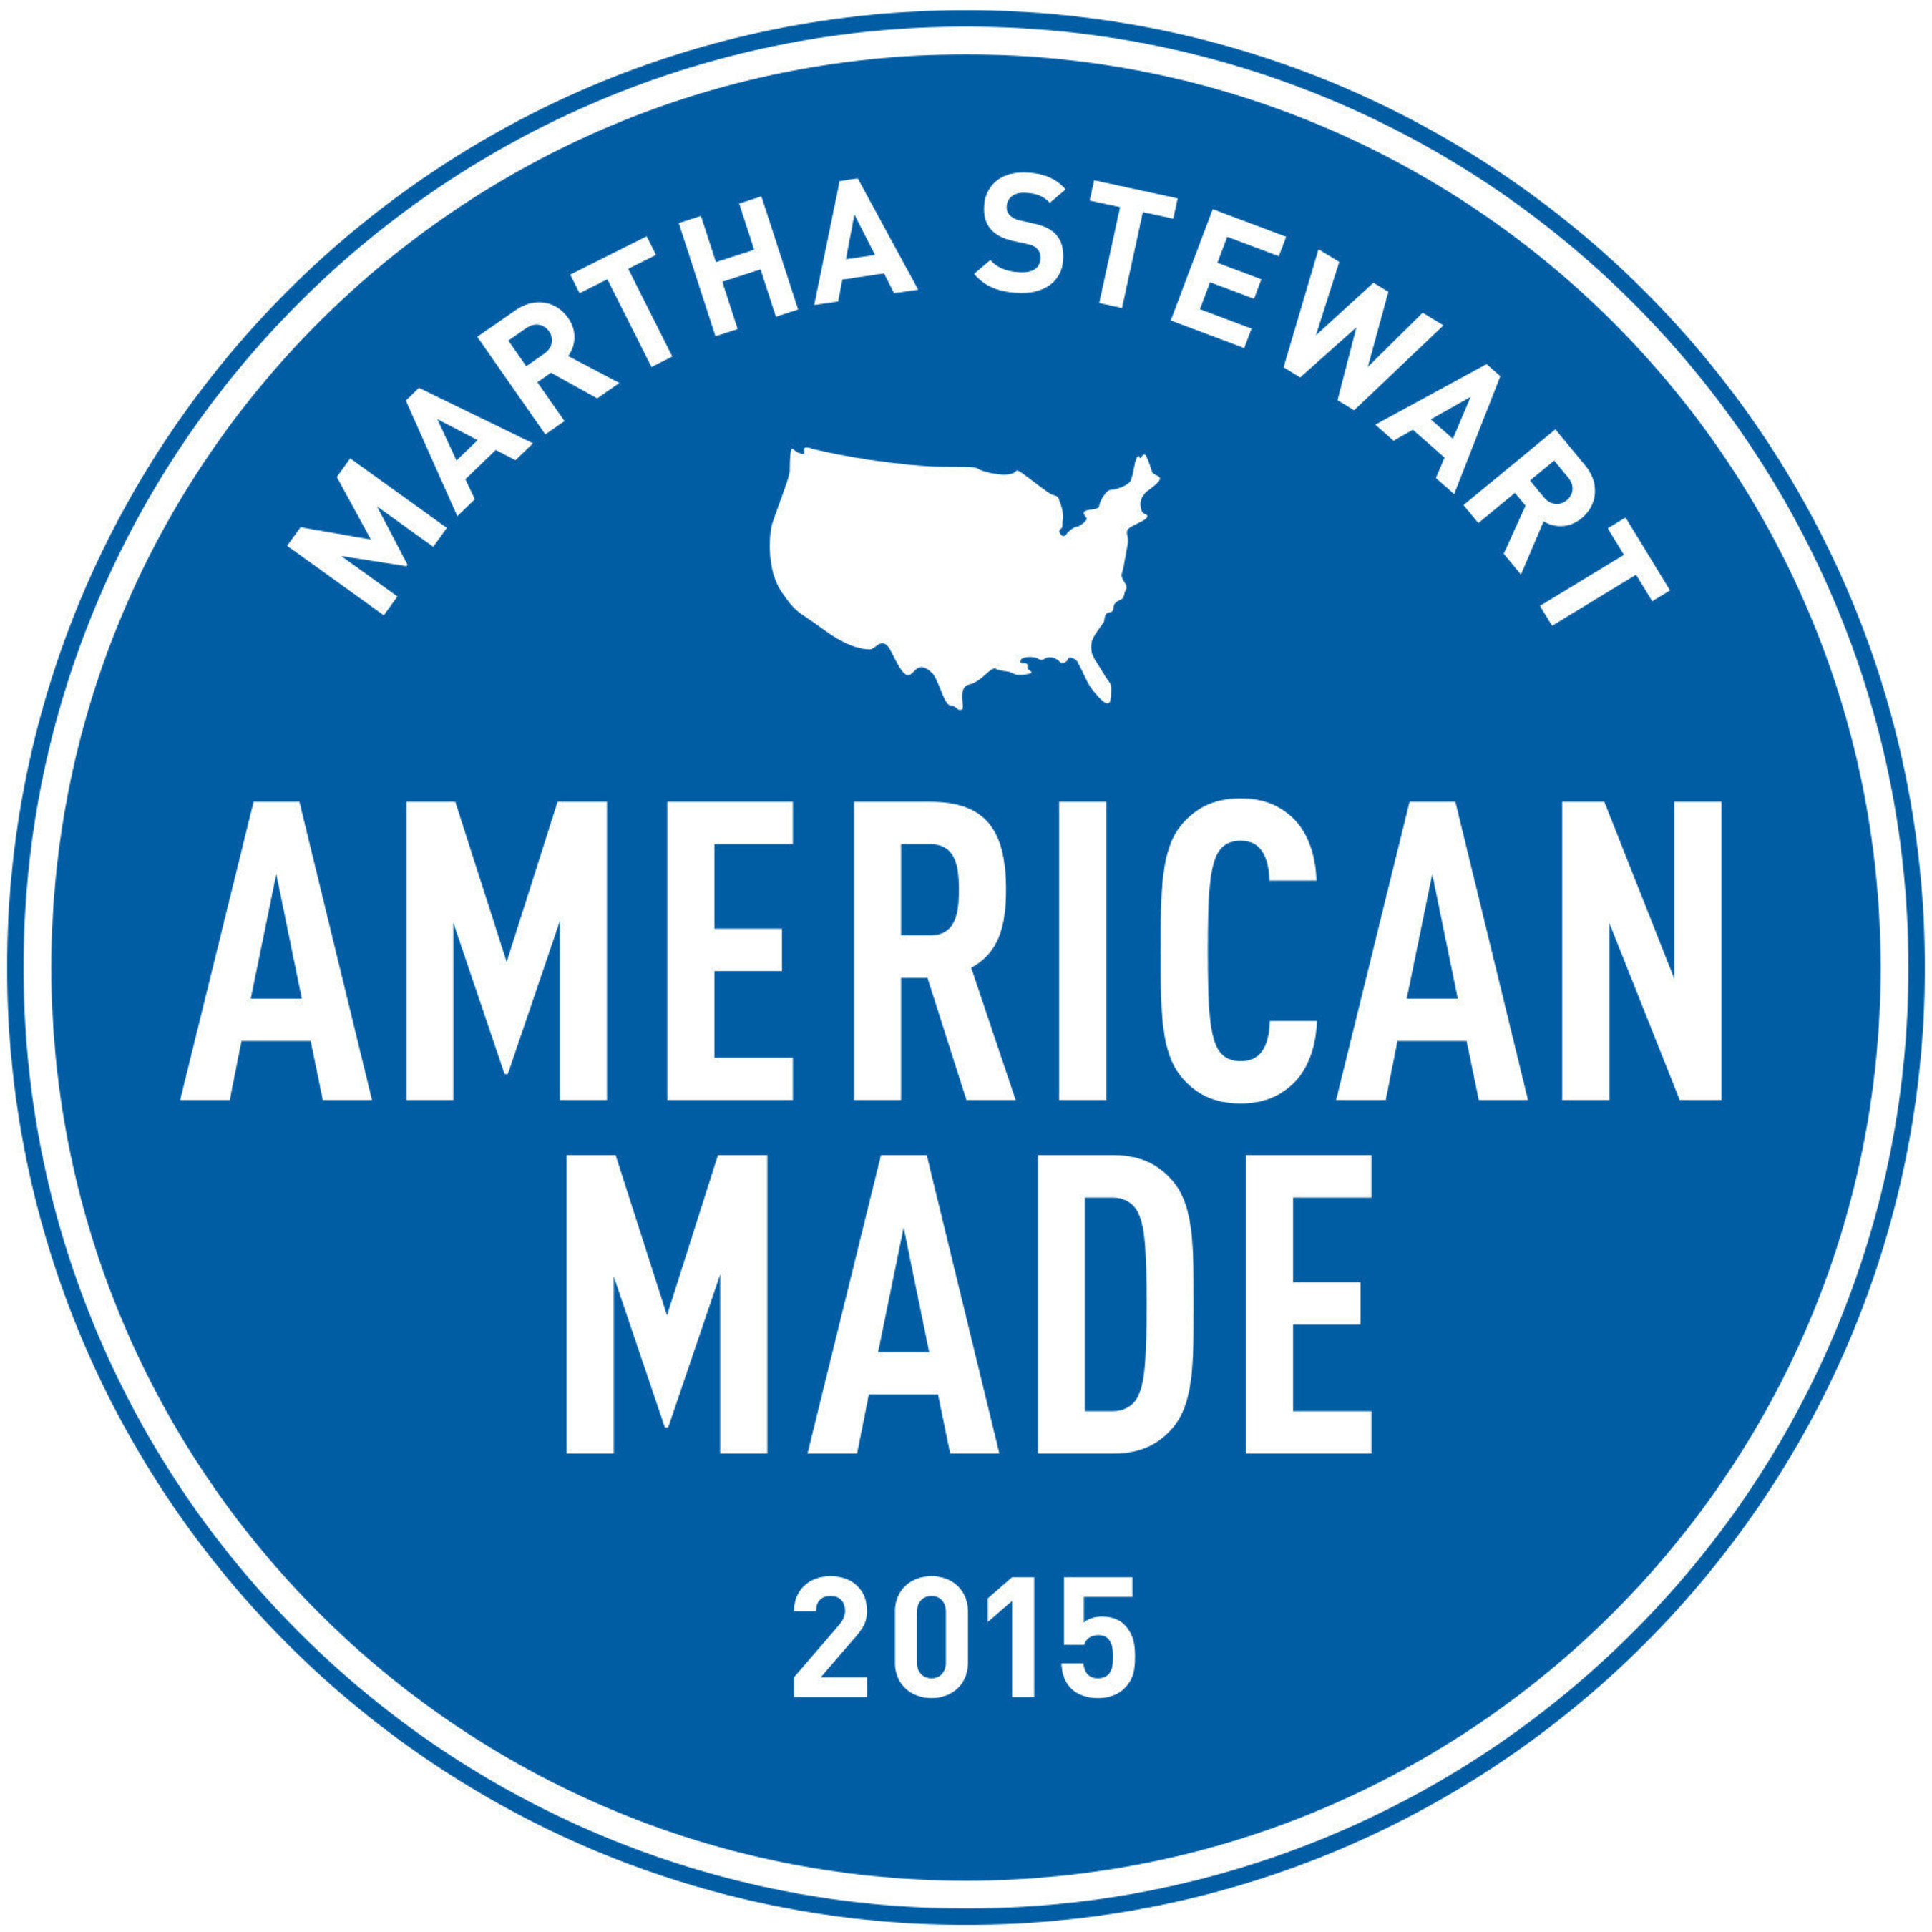 Martha Stewart Announces Fourth Annual American Made Program